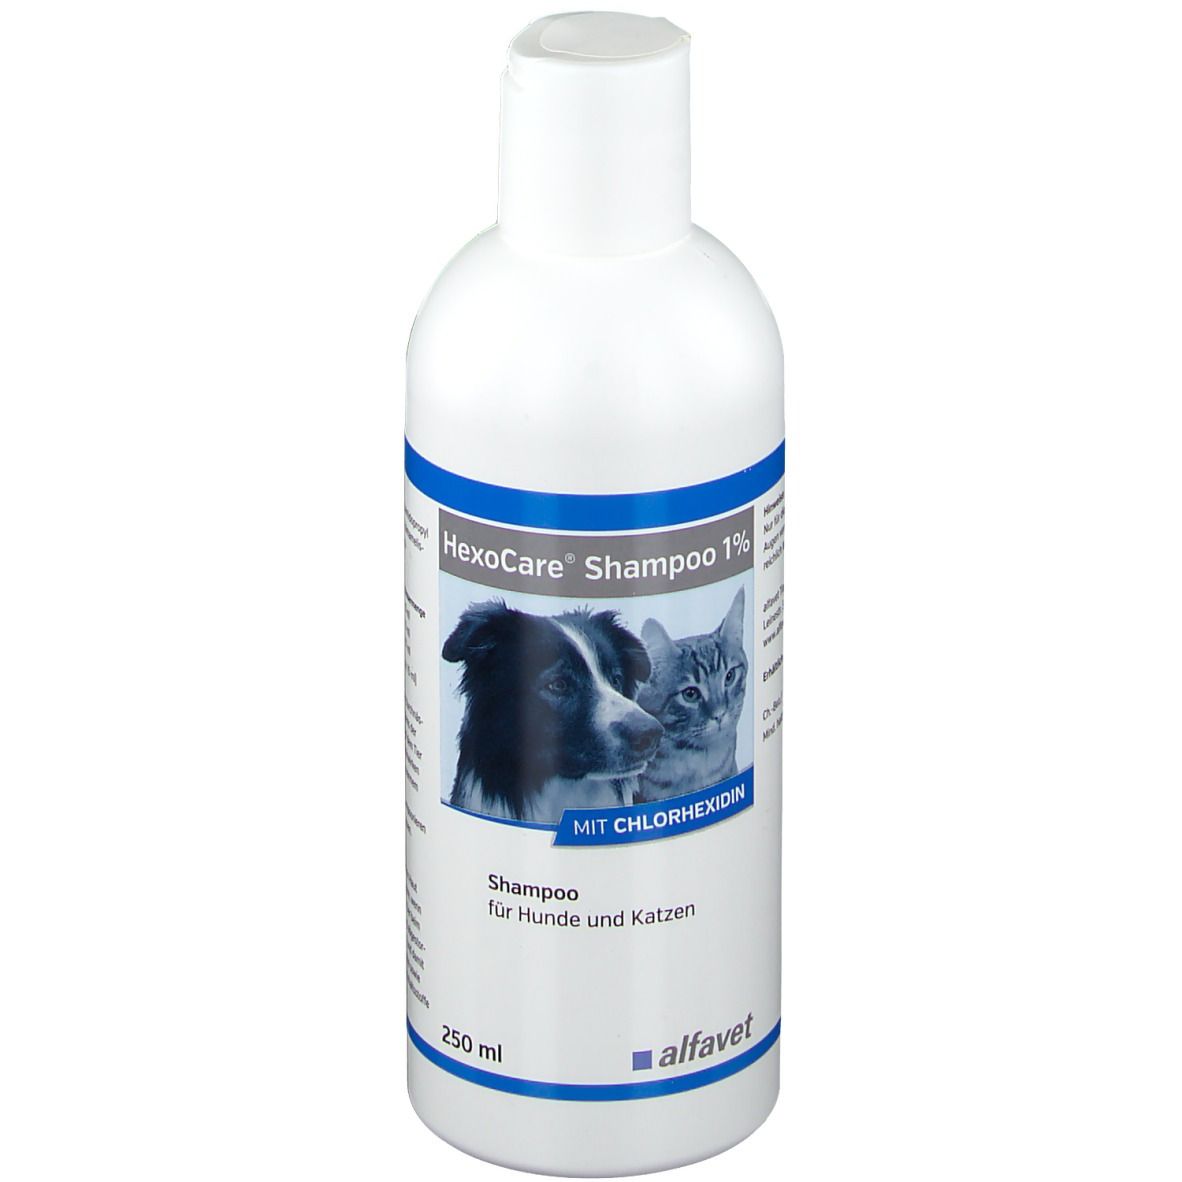 Image of HexoCare® Shampoo 1% für Hunde und Katzen